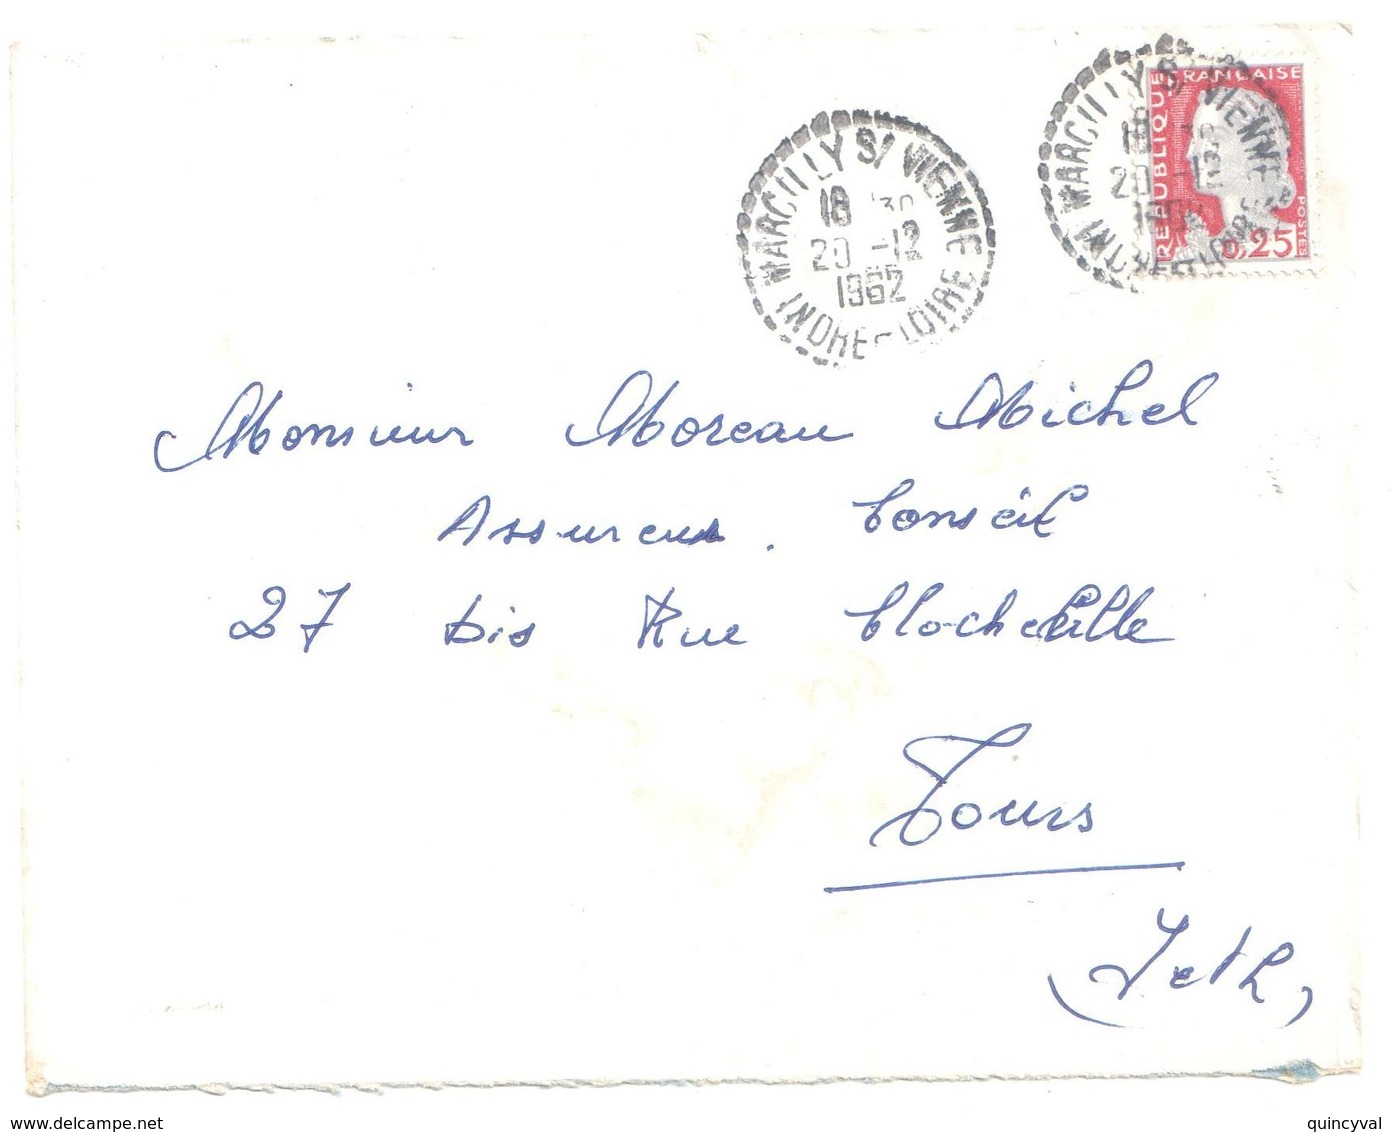 MARCILLY S/ VIENNE Indre Et Loire Lettre 25c Decaris Yv 1263  Ob 20 12 1962 FB04 Recette Distribution Lautier B8 - Covers & Documents